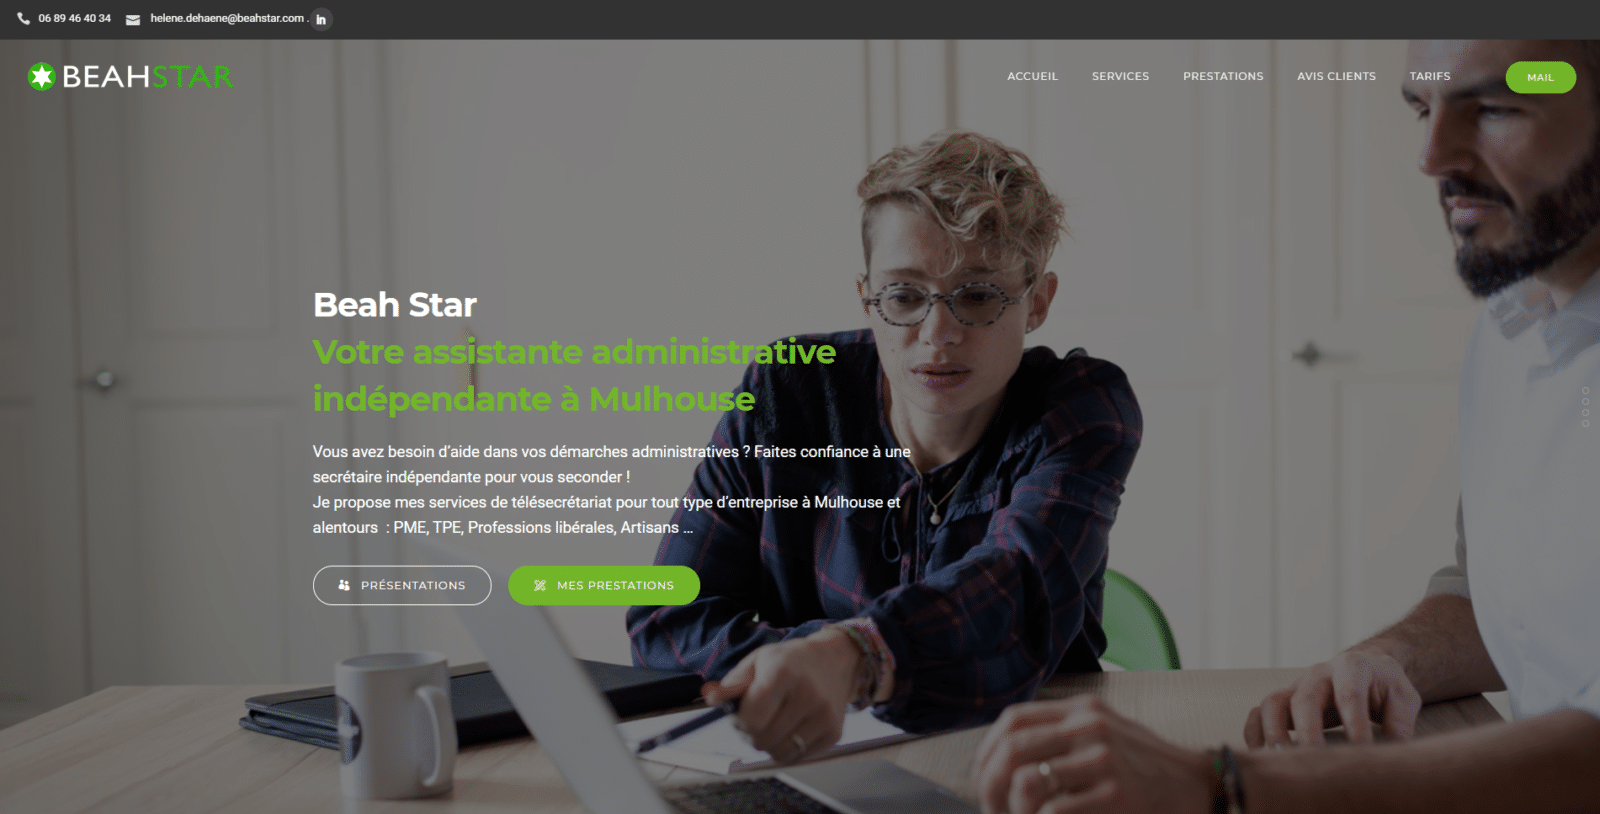 beahstar est une cliente de l'agence web Karedess, agence web situé à Mulhouse